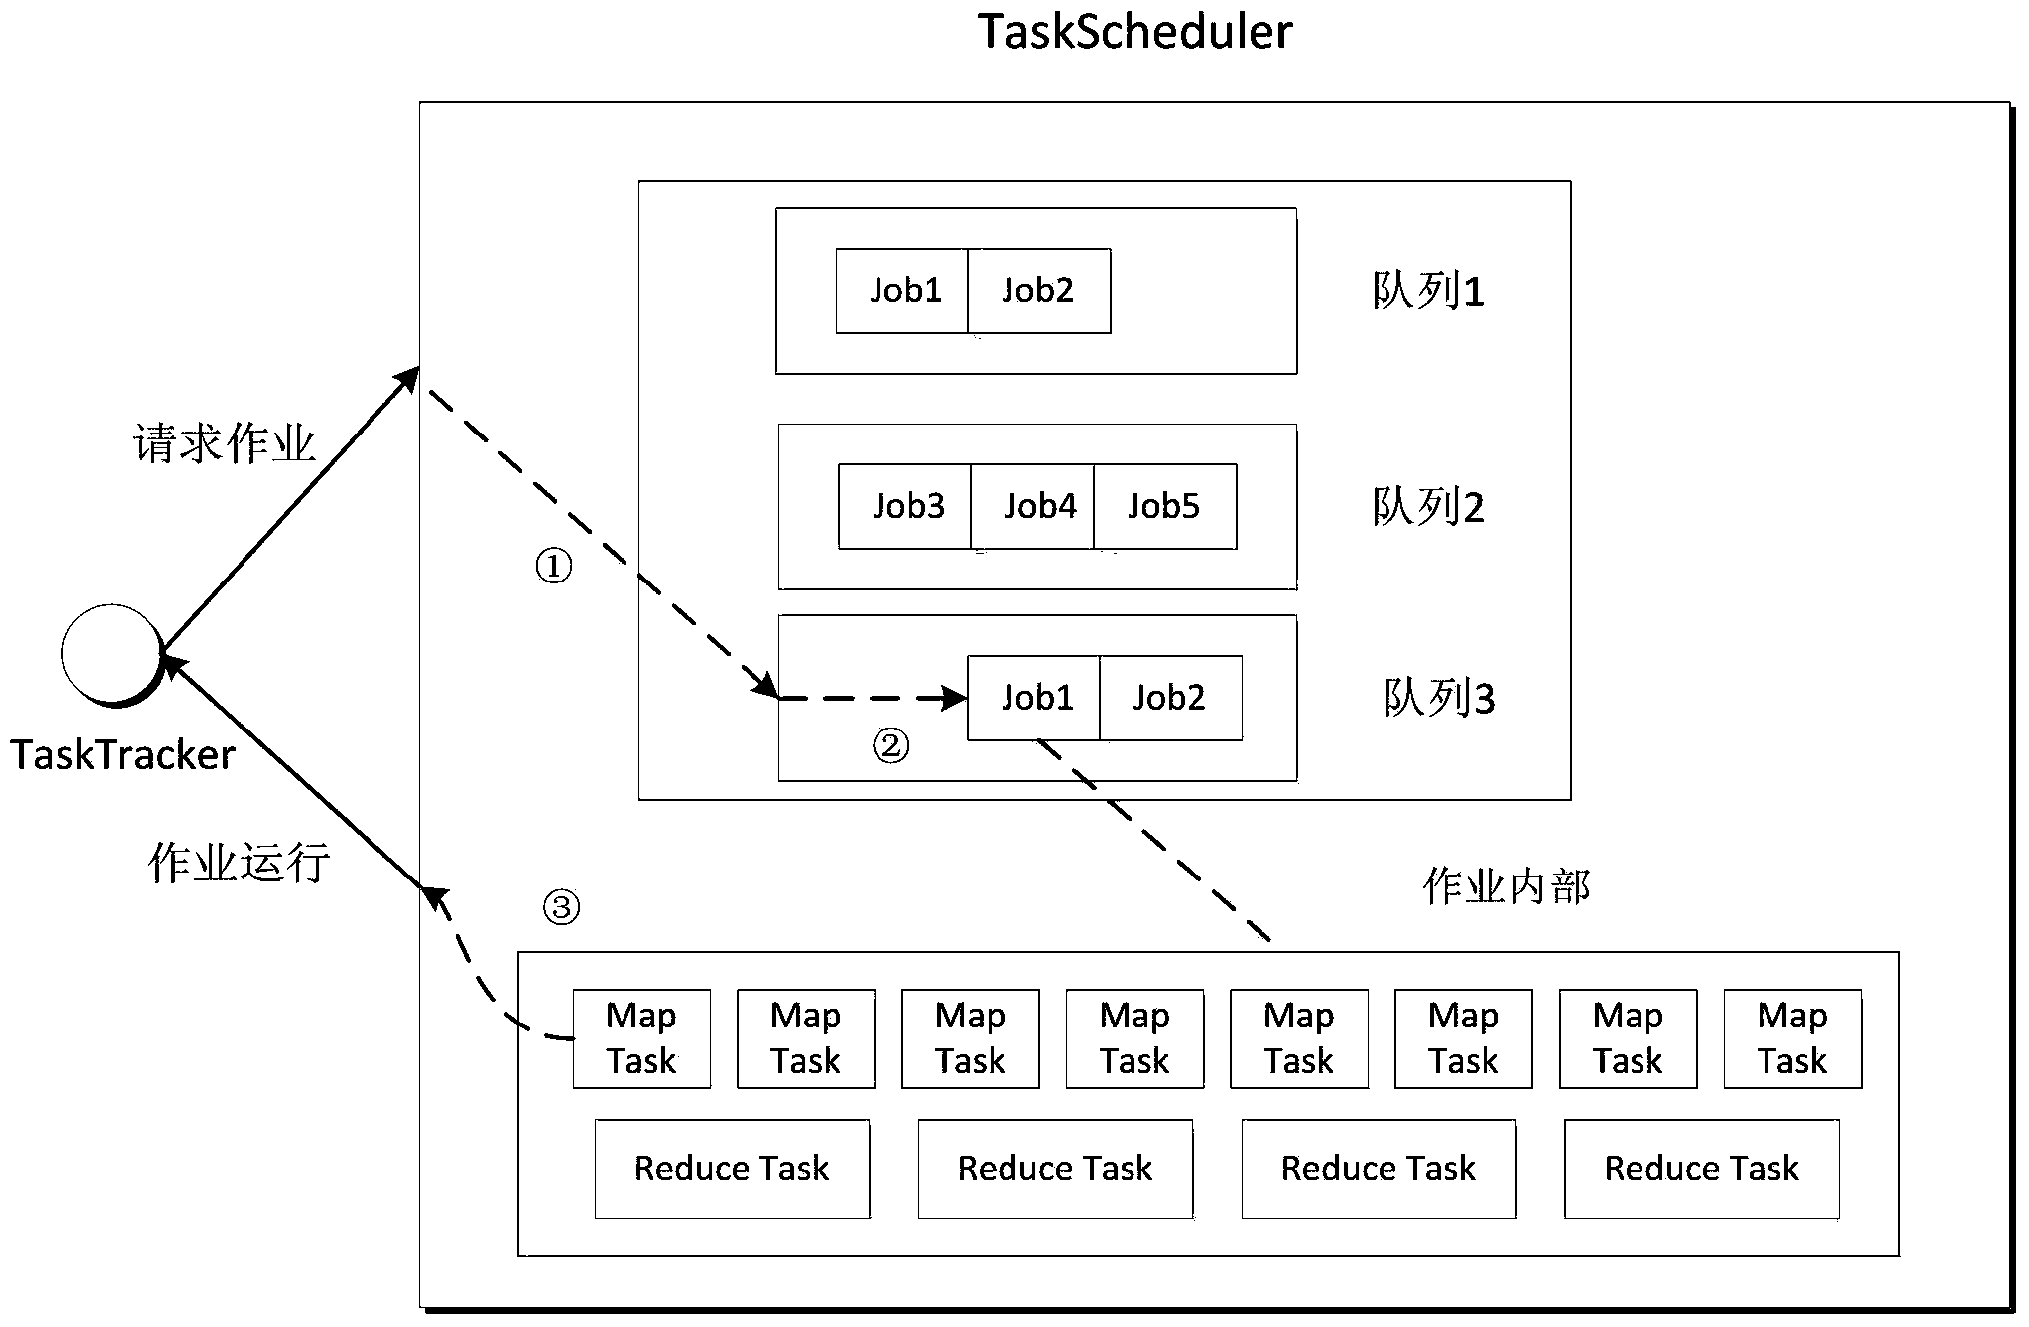 Hadoop-oriented dynamic scheduling method